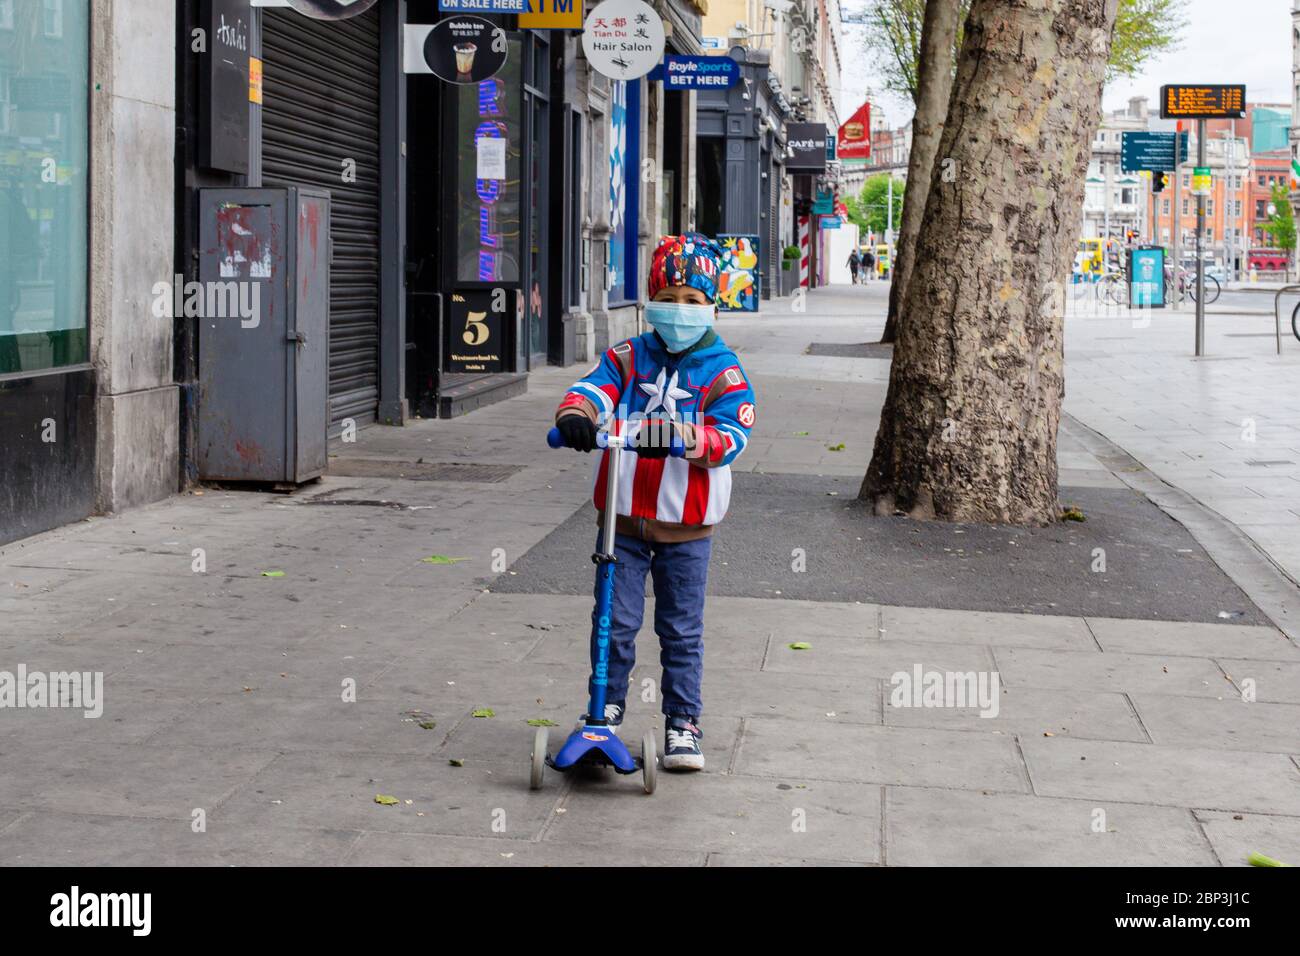 Junge auf einem Roller mit einer Superheldenjacke und einer schützenden Gesichtsmaske, die während der COVID-19-Pandemie durch das verlassene Westmoreland Str in Dublin scooting Stockfoto